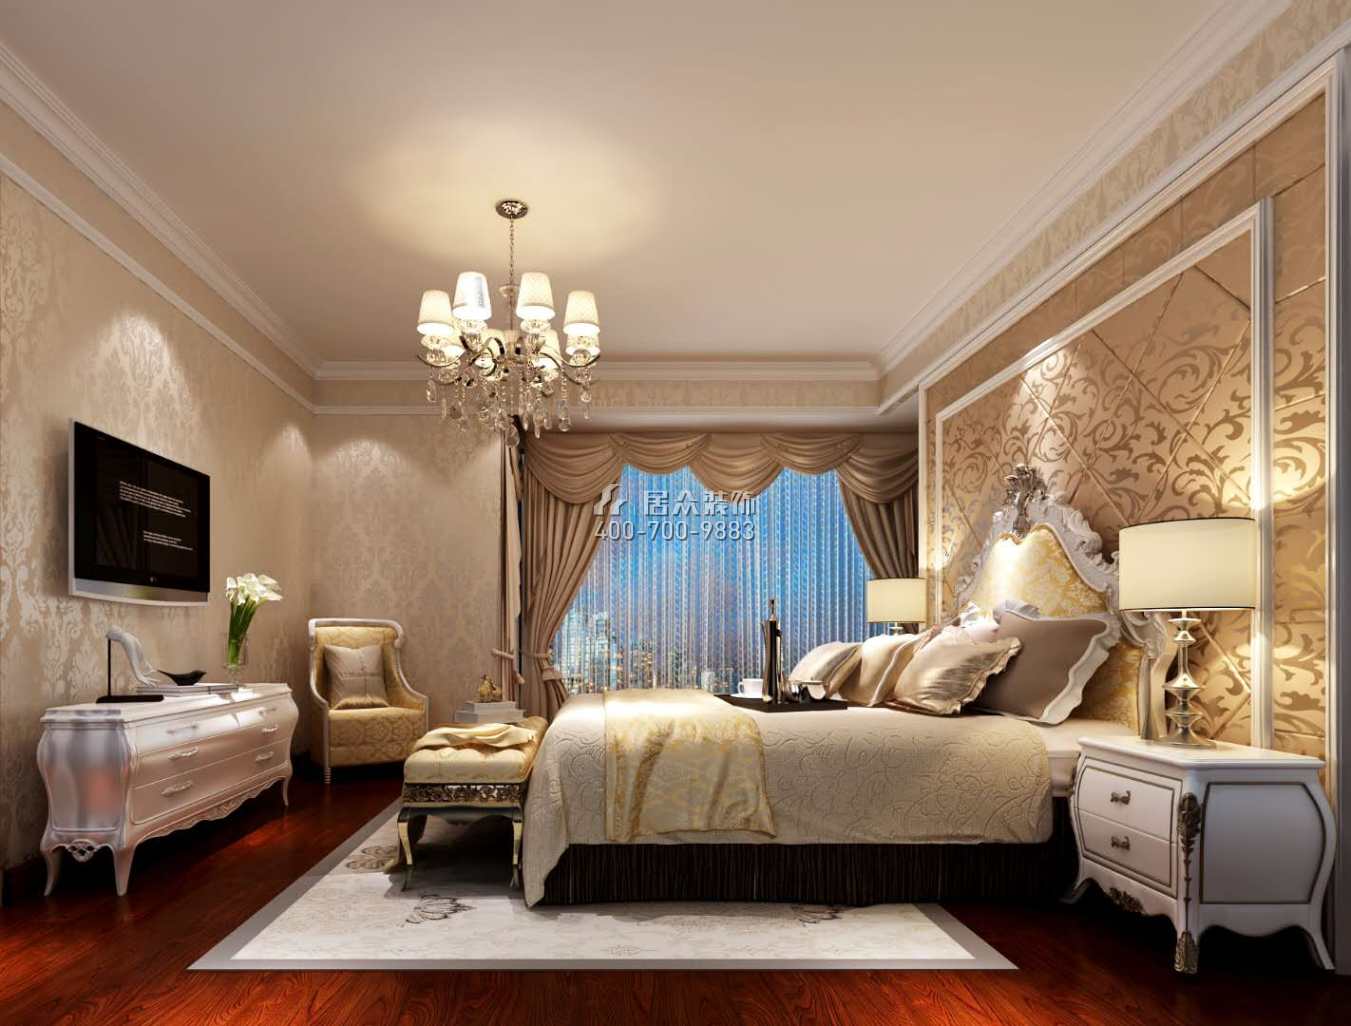 鳳城明珠150平方米歐式風格平層戶型臥室裝修效果圖